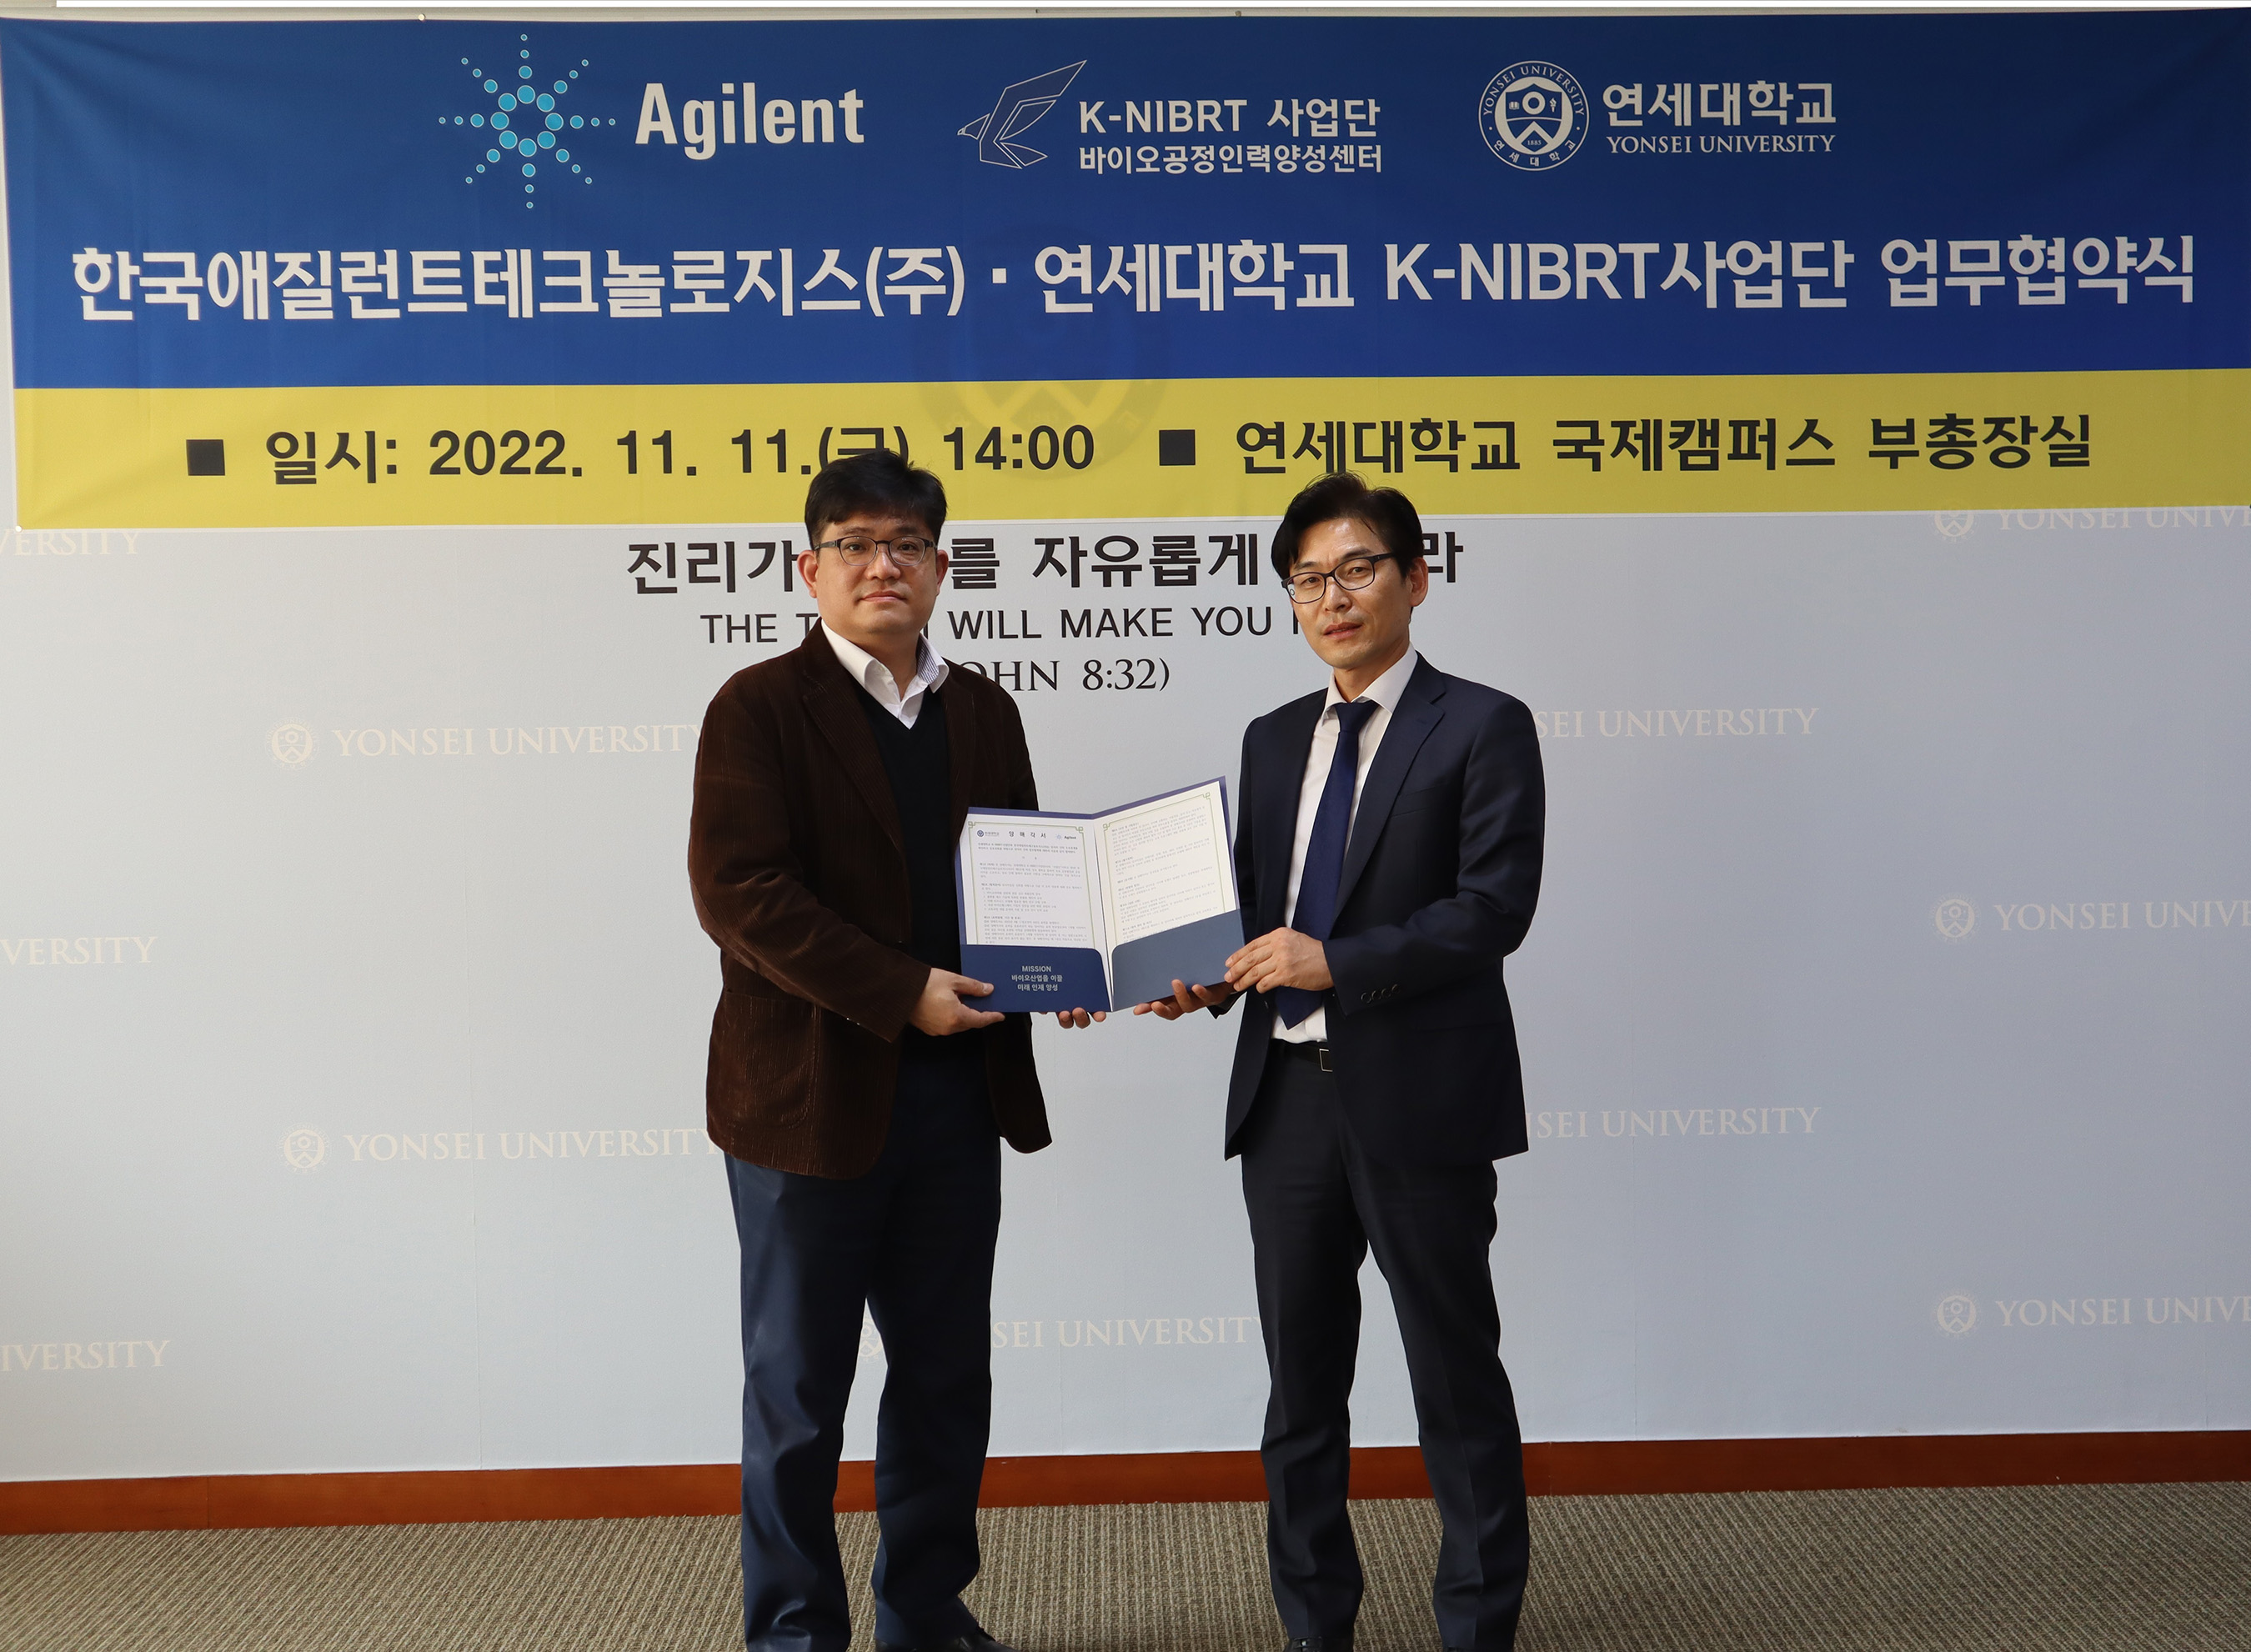 [2022. 11. 15.] 연세대 K-NIBRT사업단, 한국애질런트테크놀로지스와 업무협약 체결